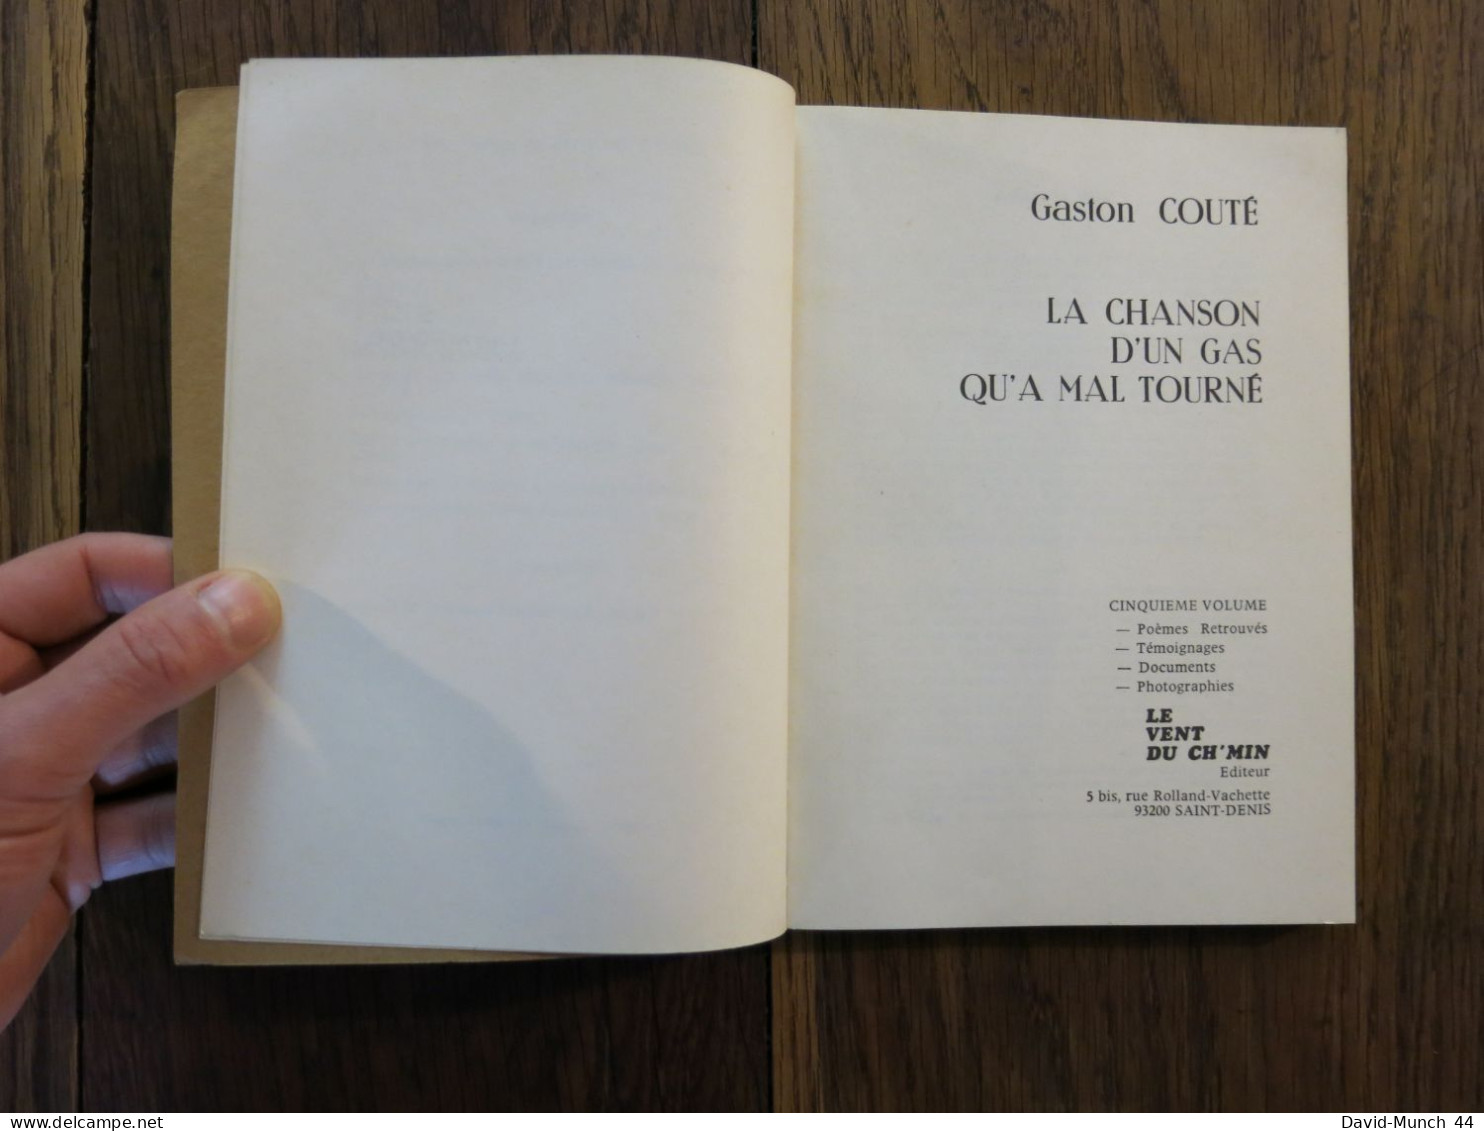 La Chanson D'un Gâs Qu'a Mal Tourné Tome 5 De Gaston Couté. Le Vent Du Ch'min. 1980 - Auteurs Français